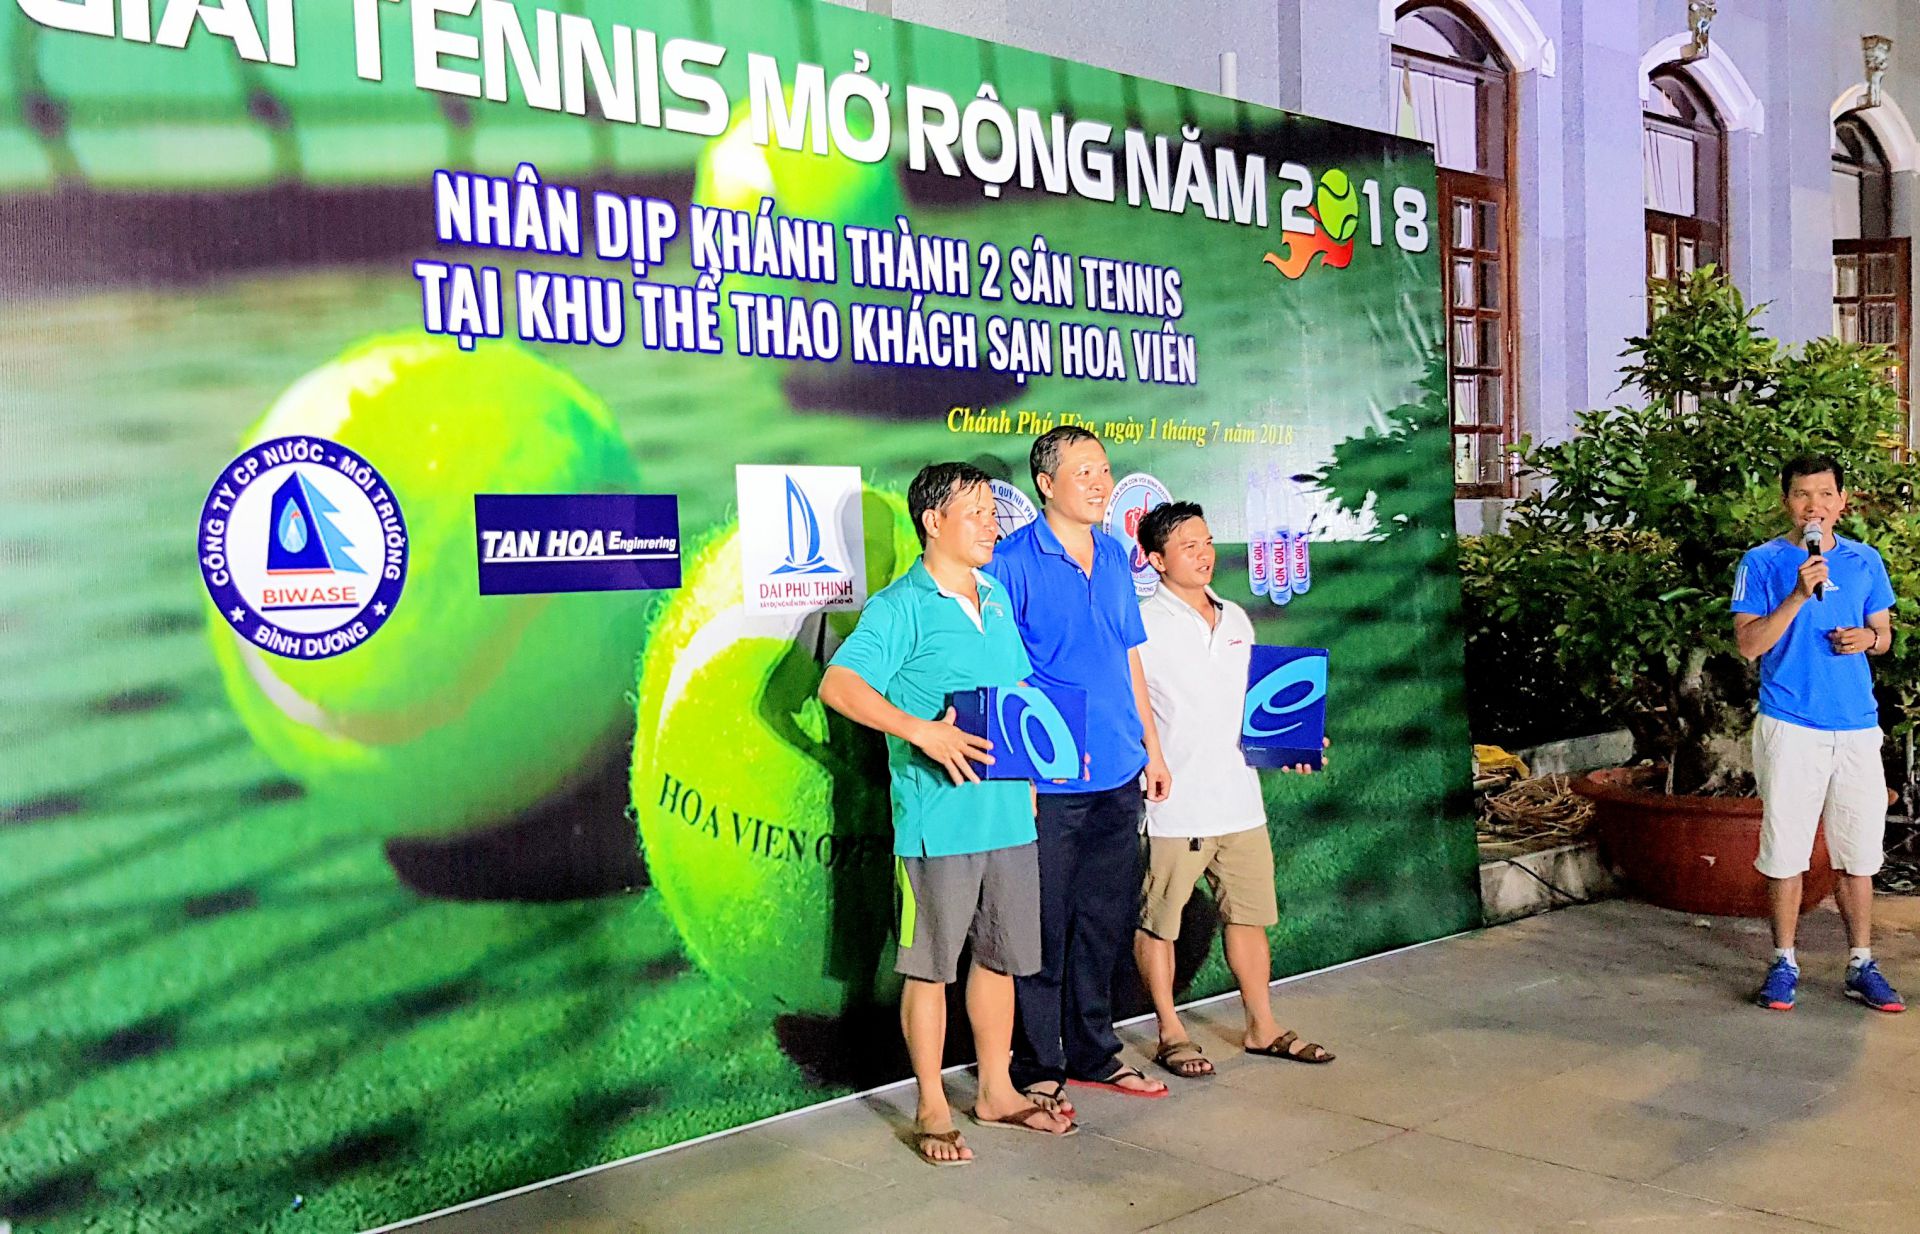 Tổng kết giải tennis Hoa Viên mở rộng 2018